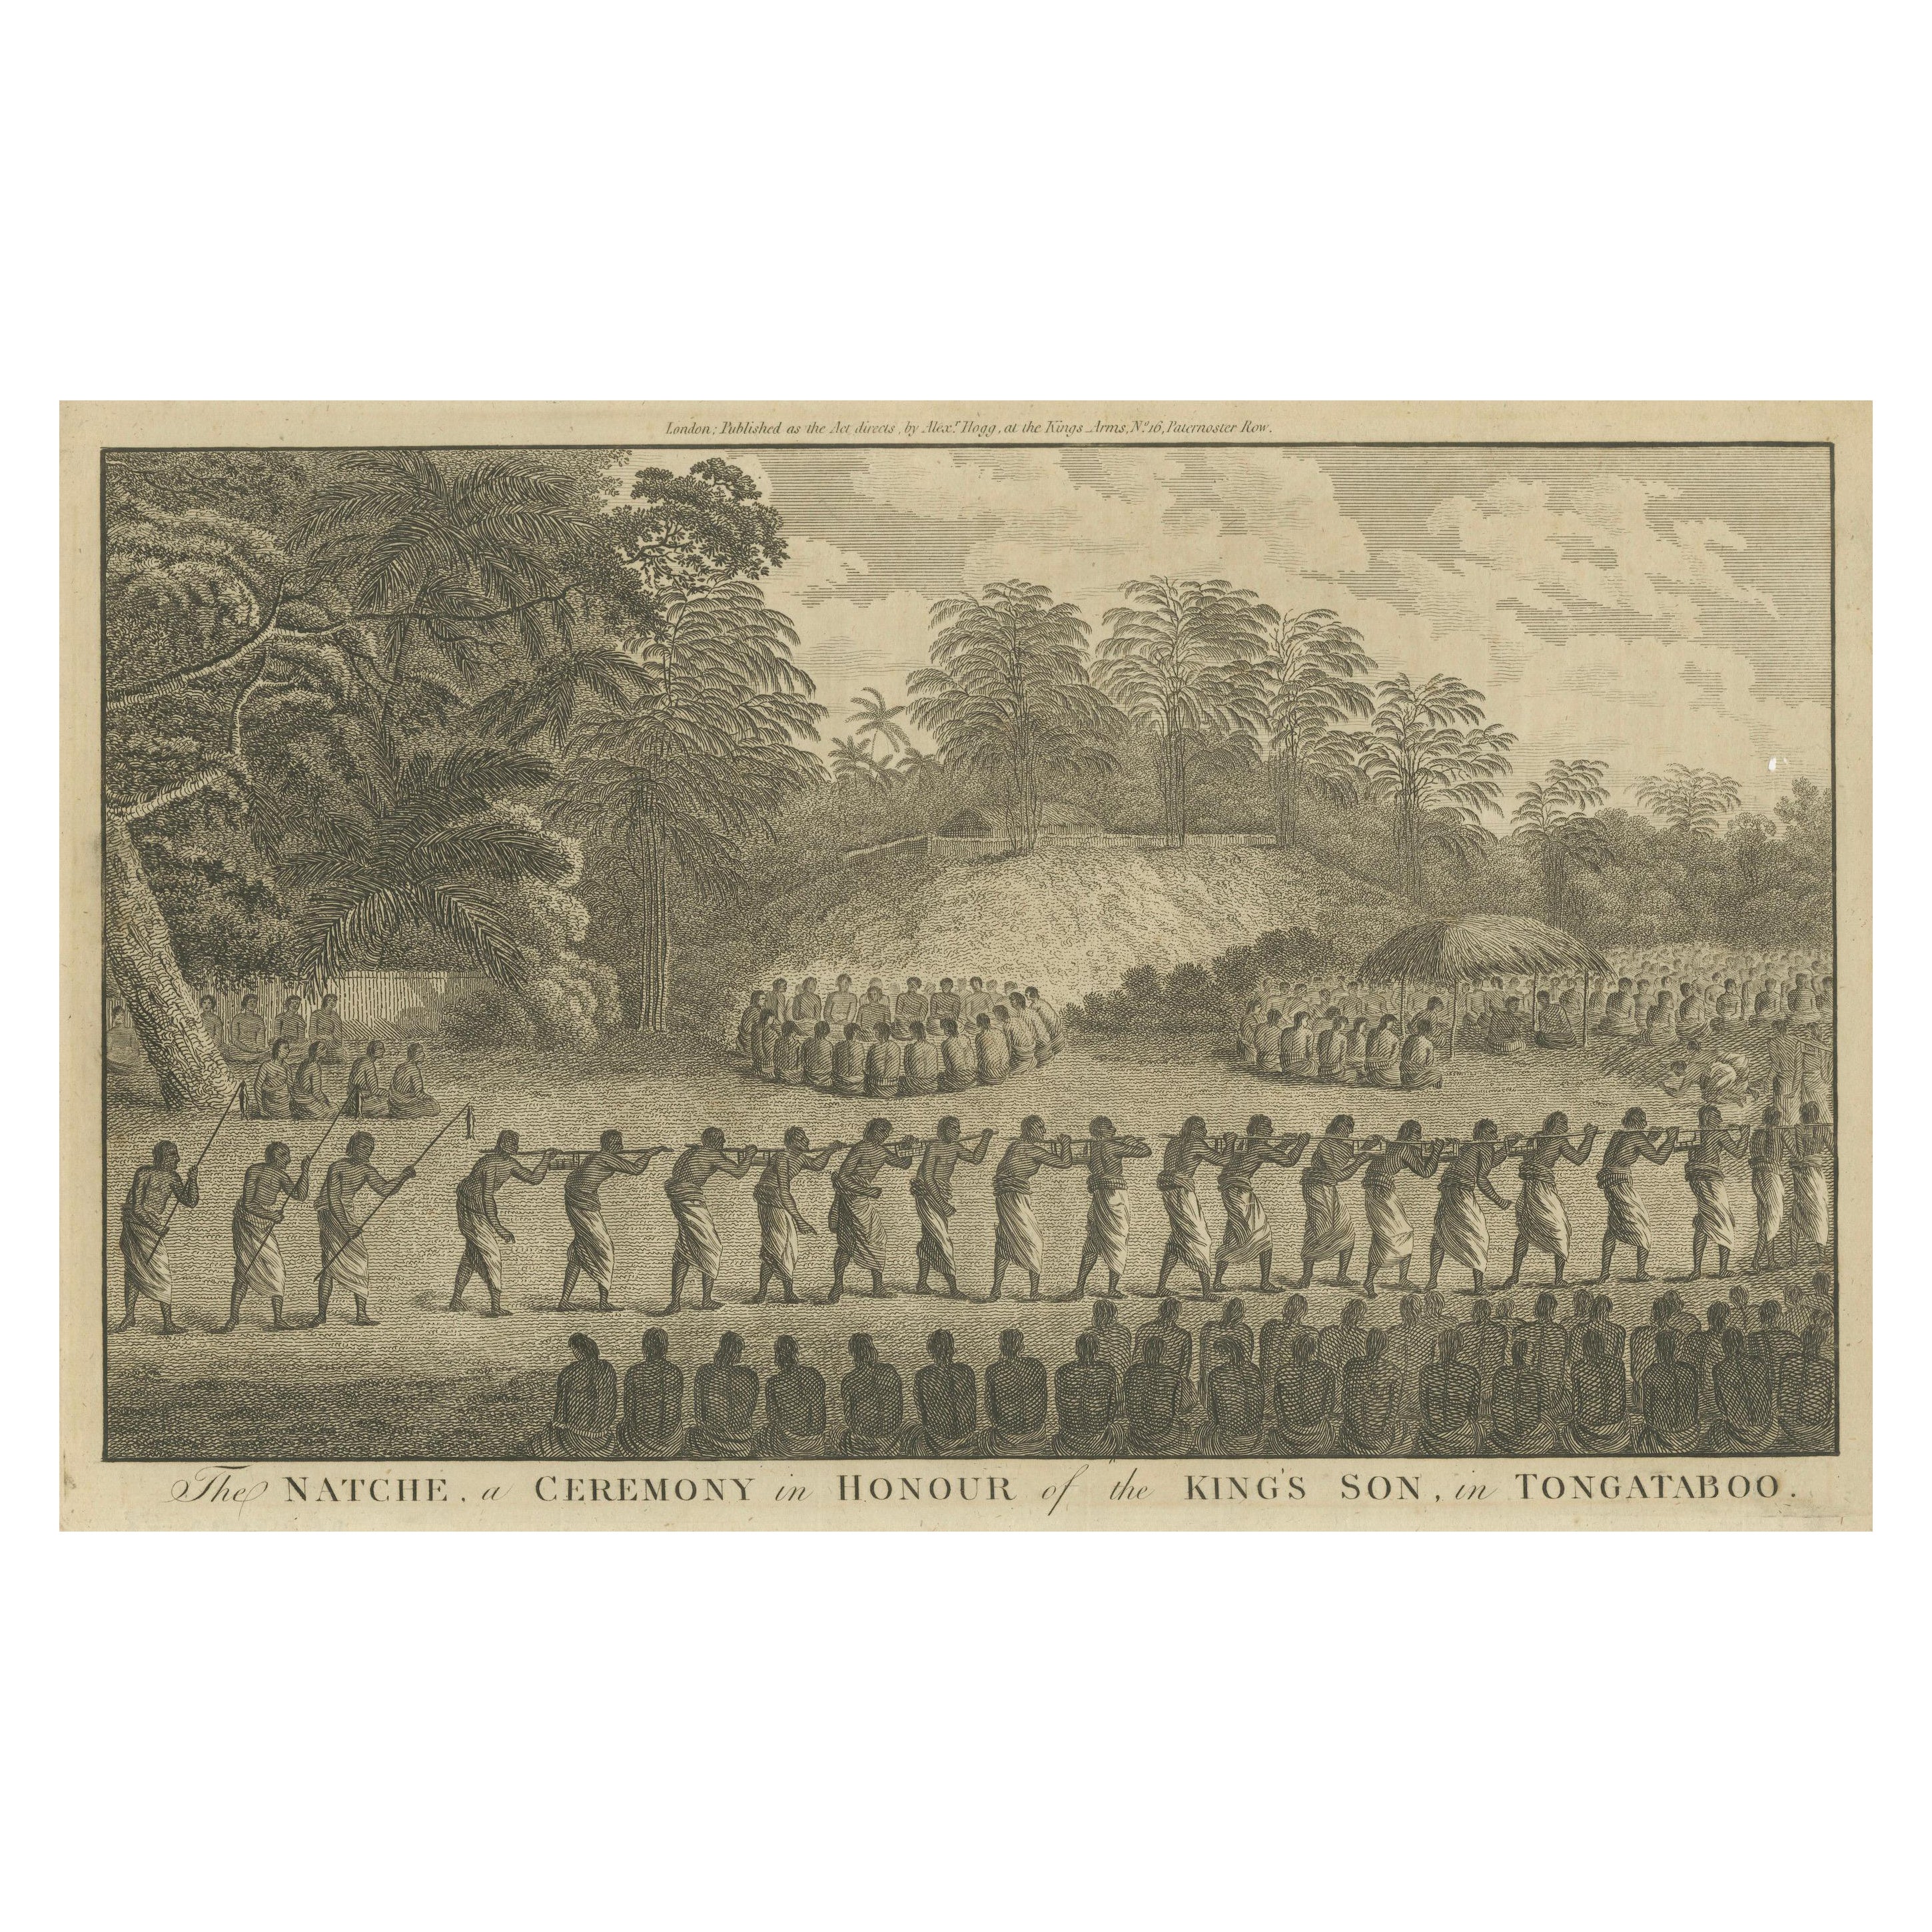 Celebrity in Tongatapu : The Natche Ceremony Engraved in circa 1785 (Célébration royale à Tongatapu : la cérémonie des Natche gravée vers 1785)